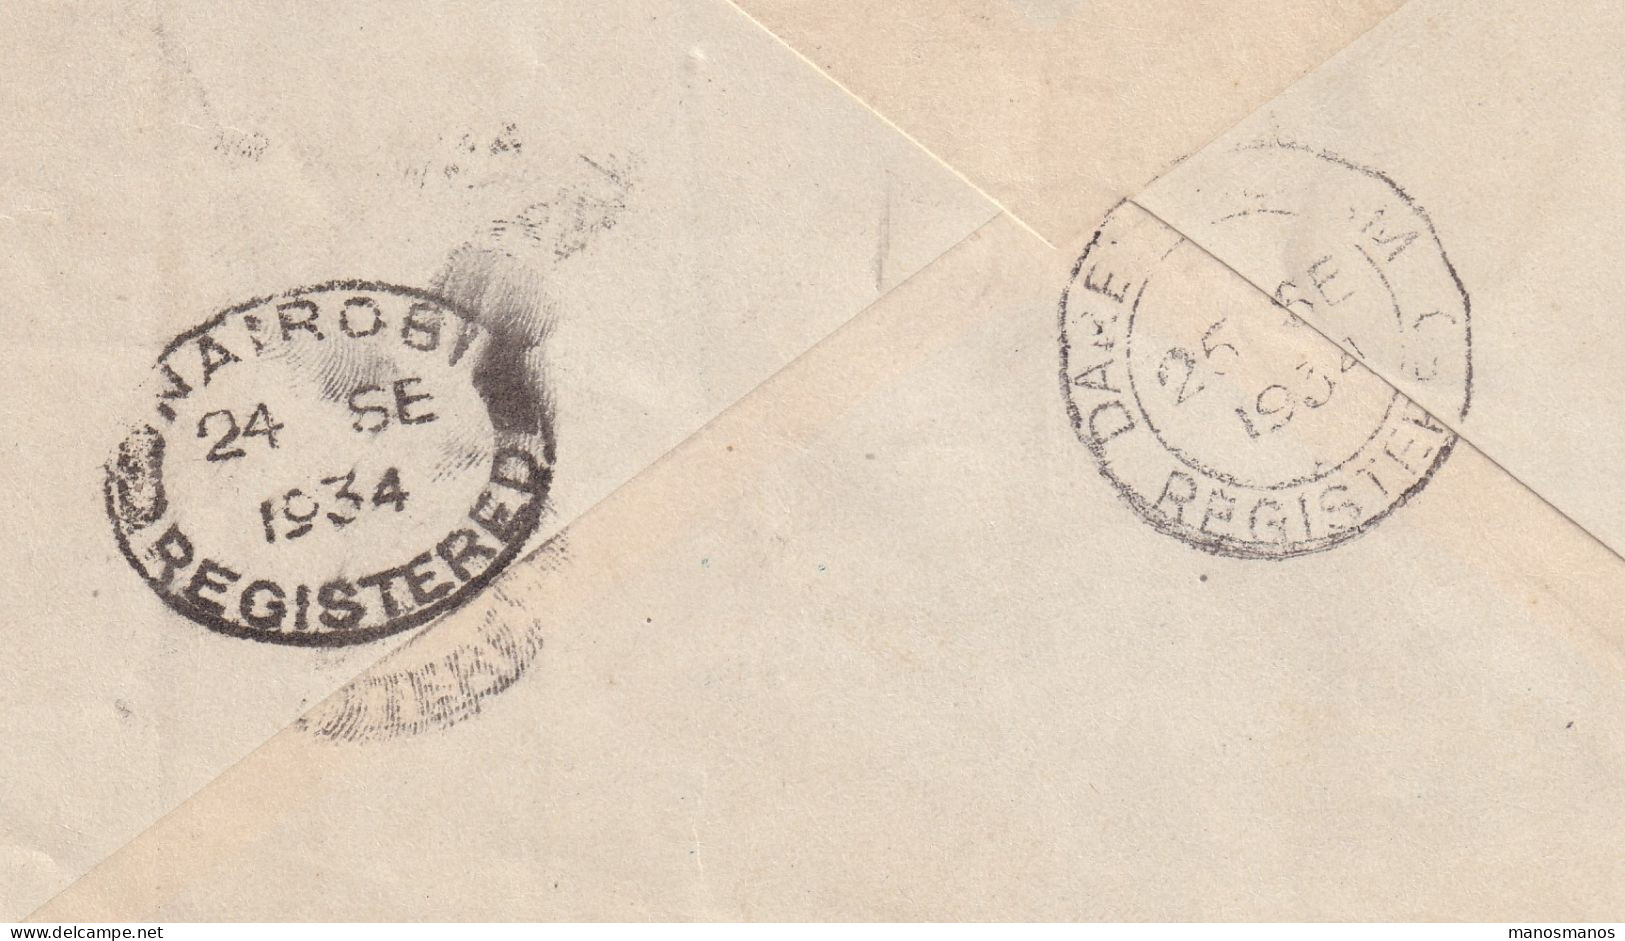 971/40 -- PAR AVION - Enveloppe Recommandée TP Képis MORTSEL 1934 Vers DAR ES SALAAM Tanzania - Lettres & Documents